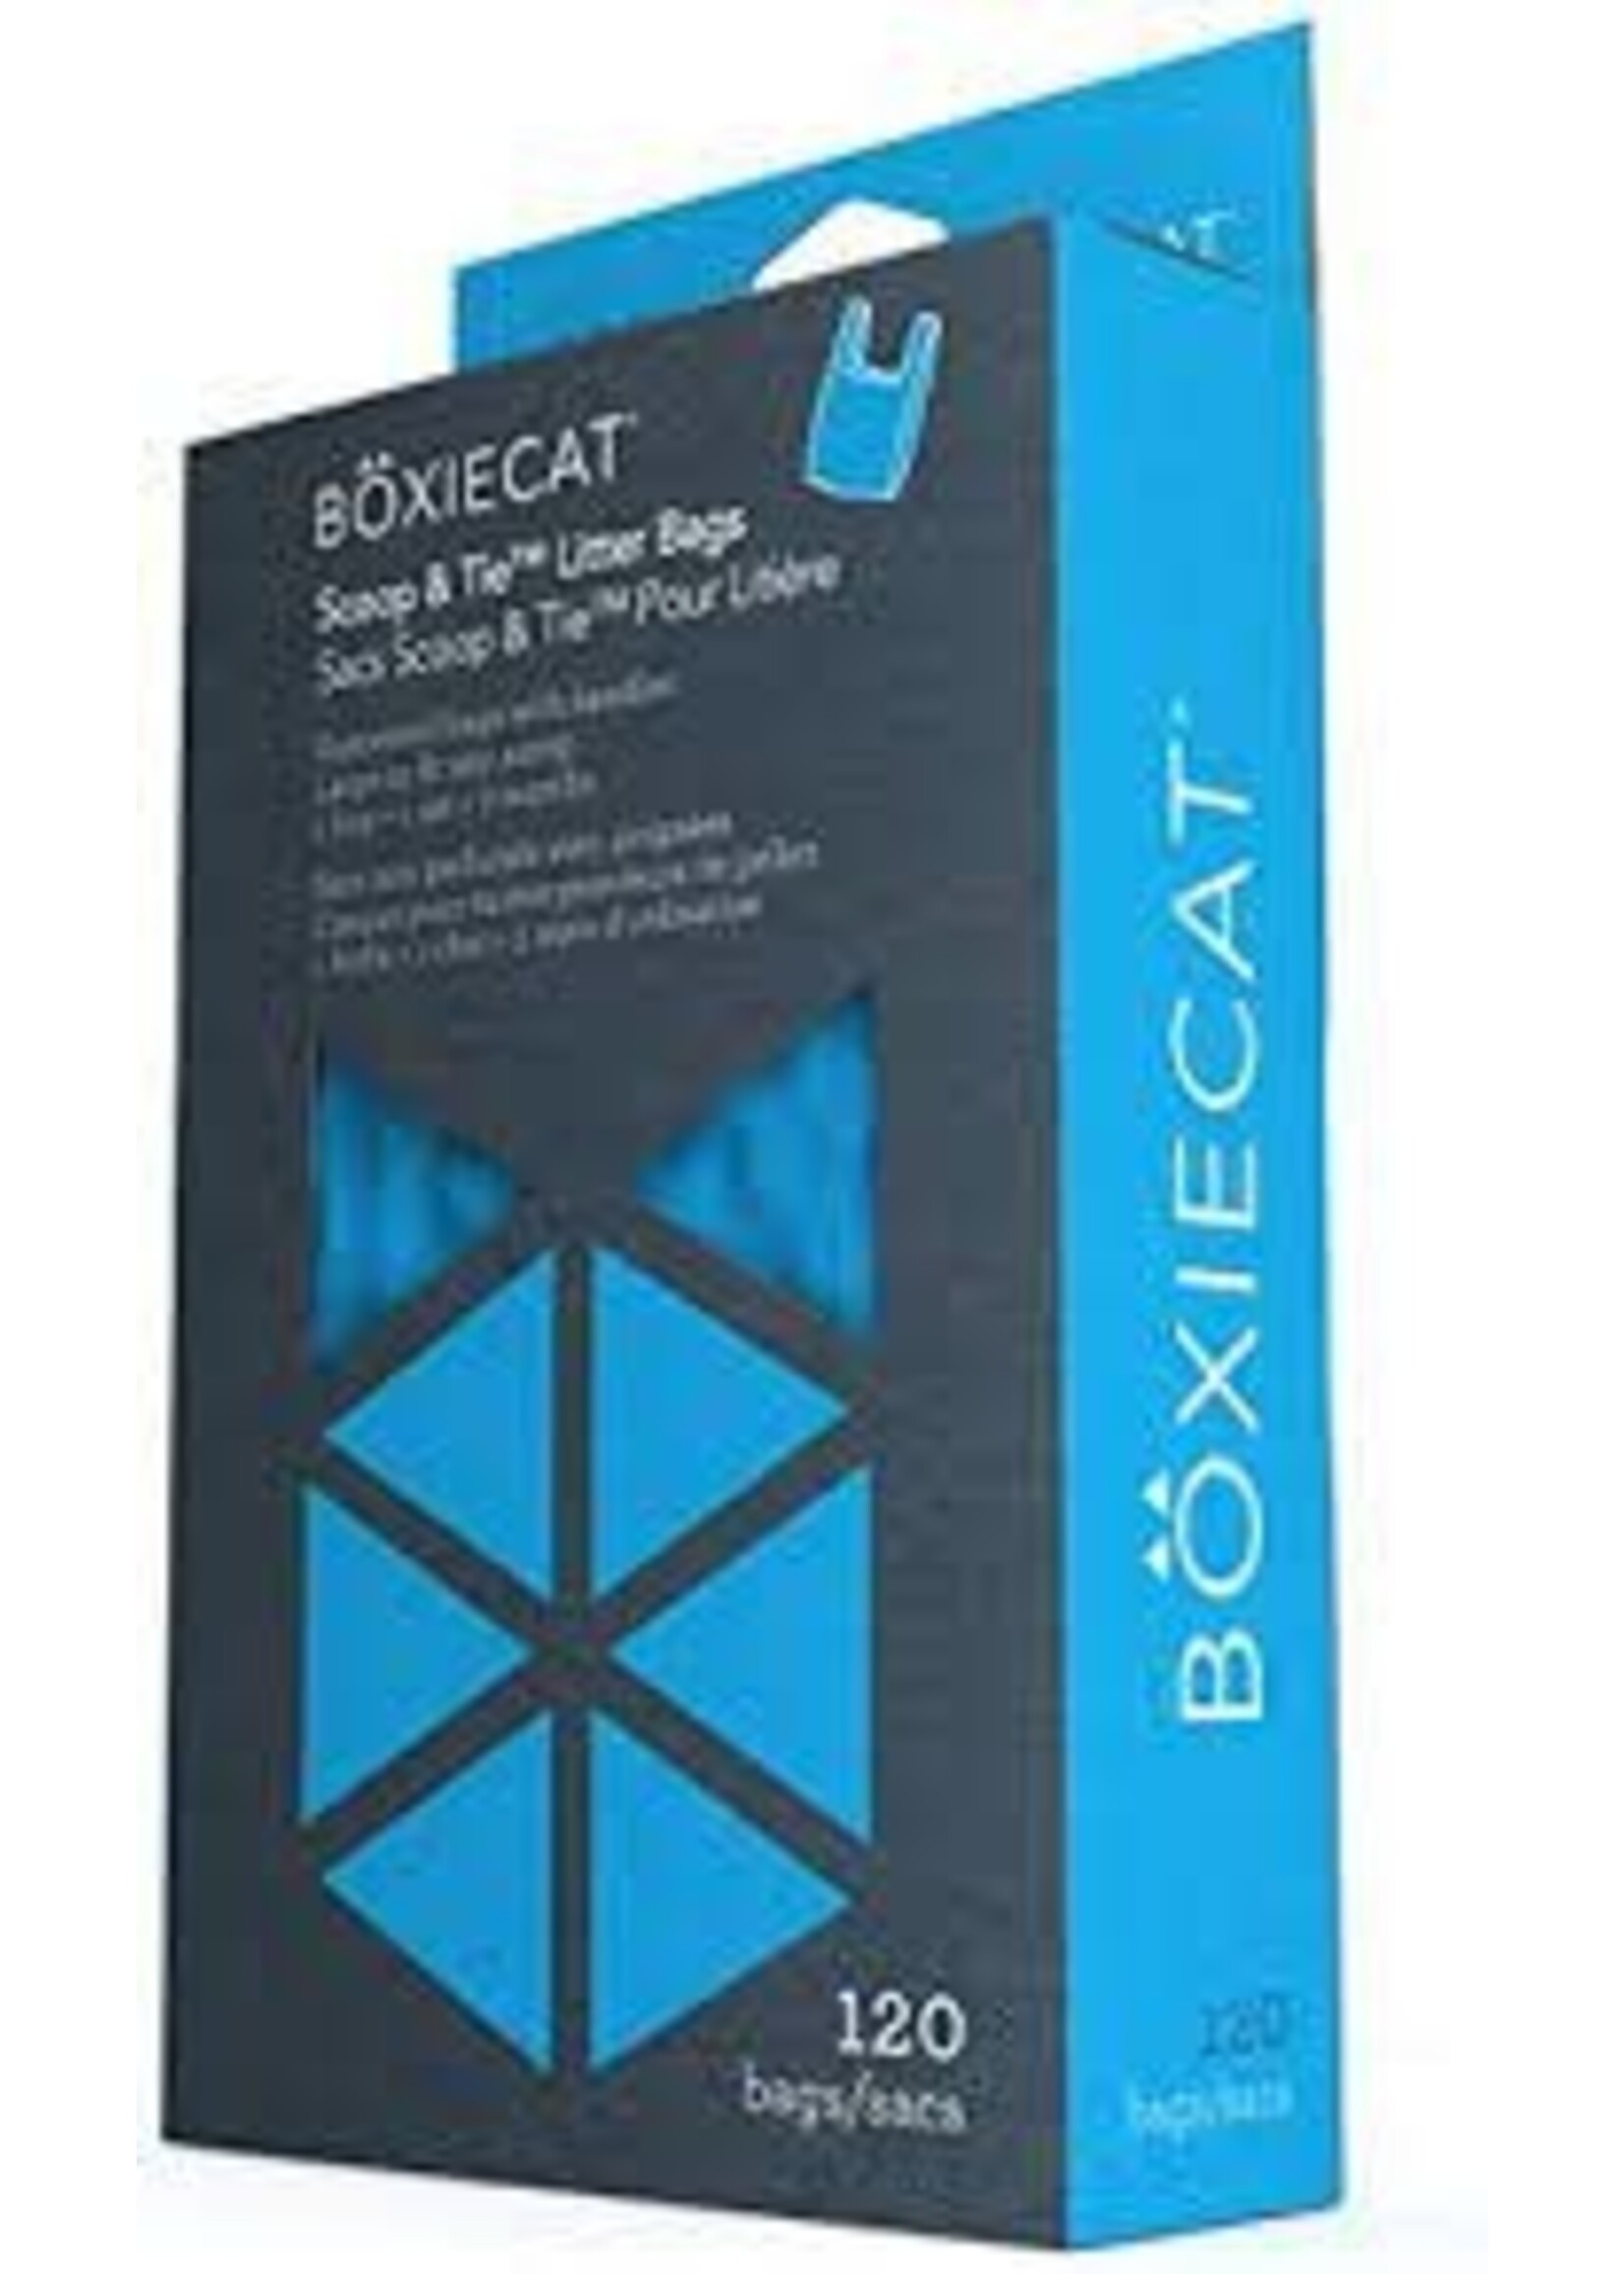 Boxie Cat LLC Boxie Cat Scoop + Tie Litter Bags